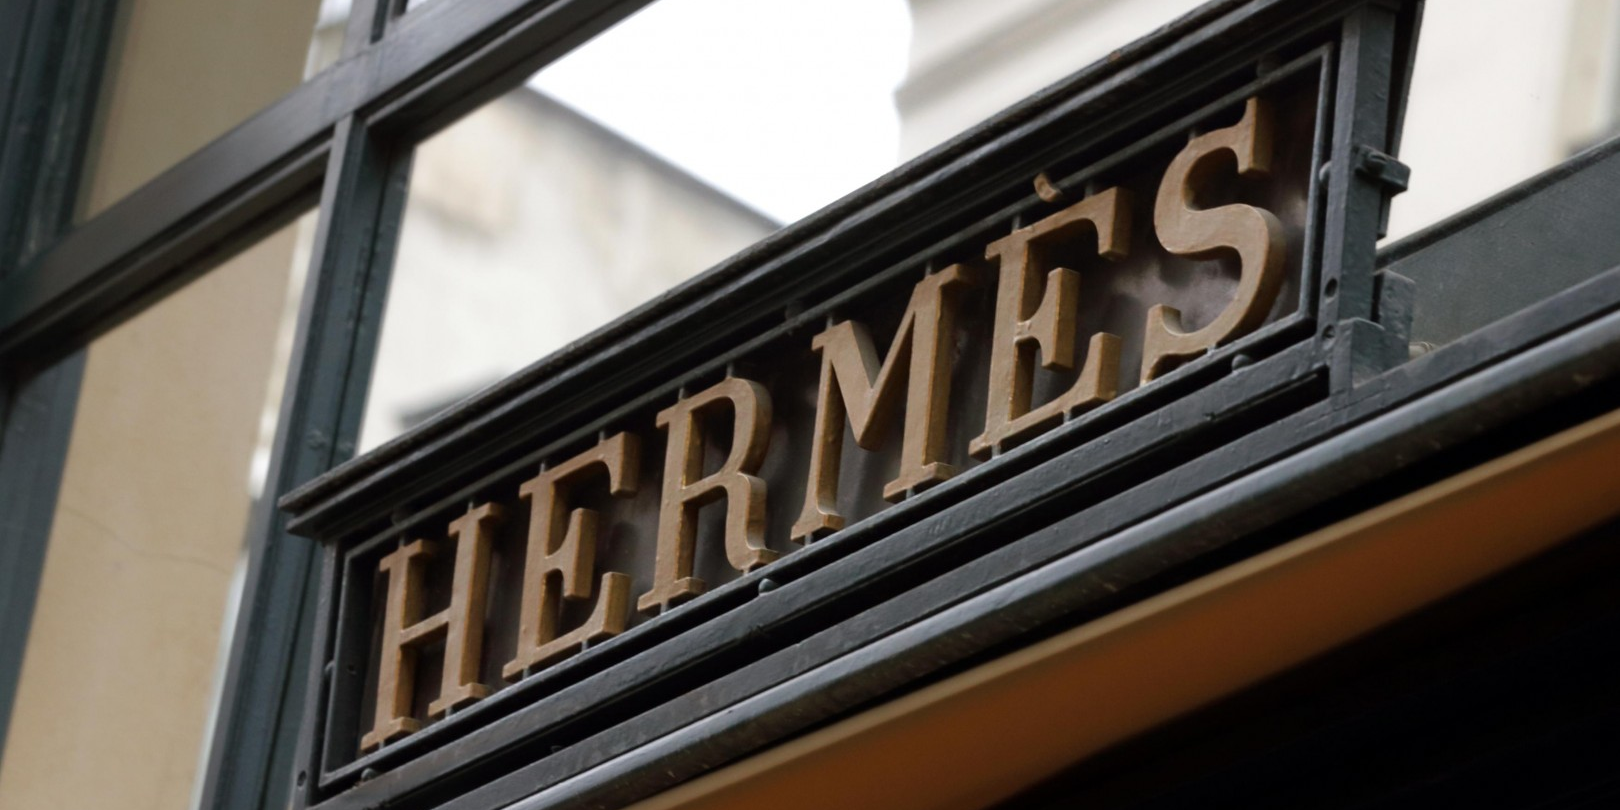 Le plus gros actionnaire individuel d'Hermès veut adopter son employé de maison pour lui transmettre sa fortune